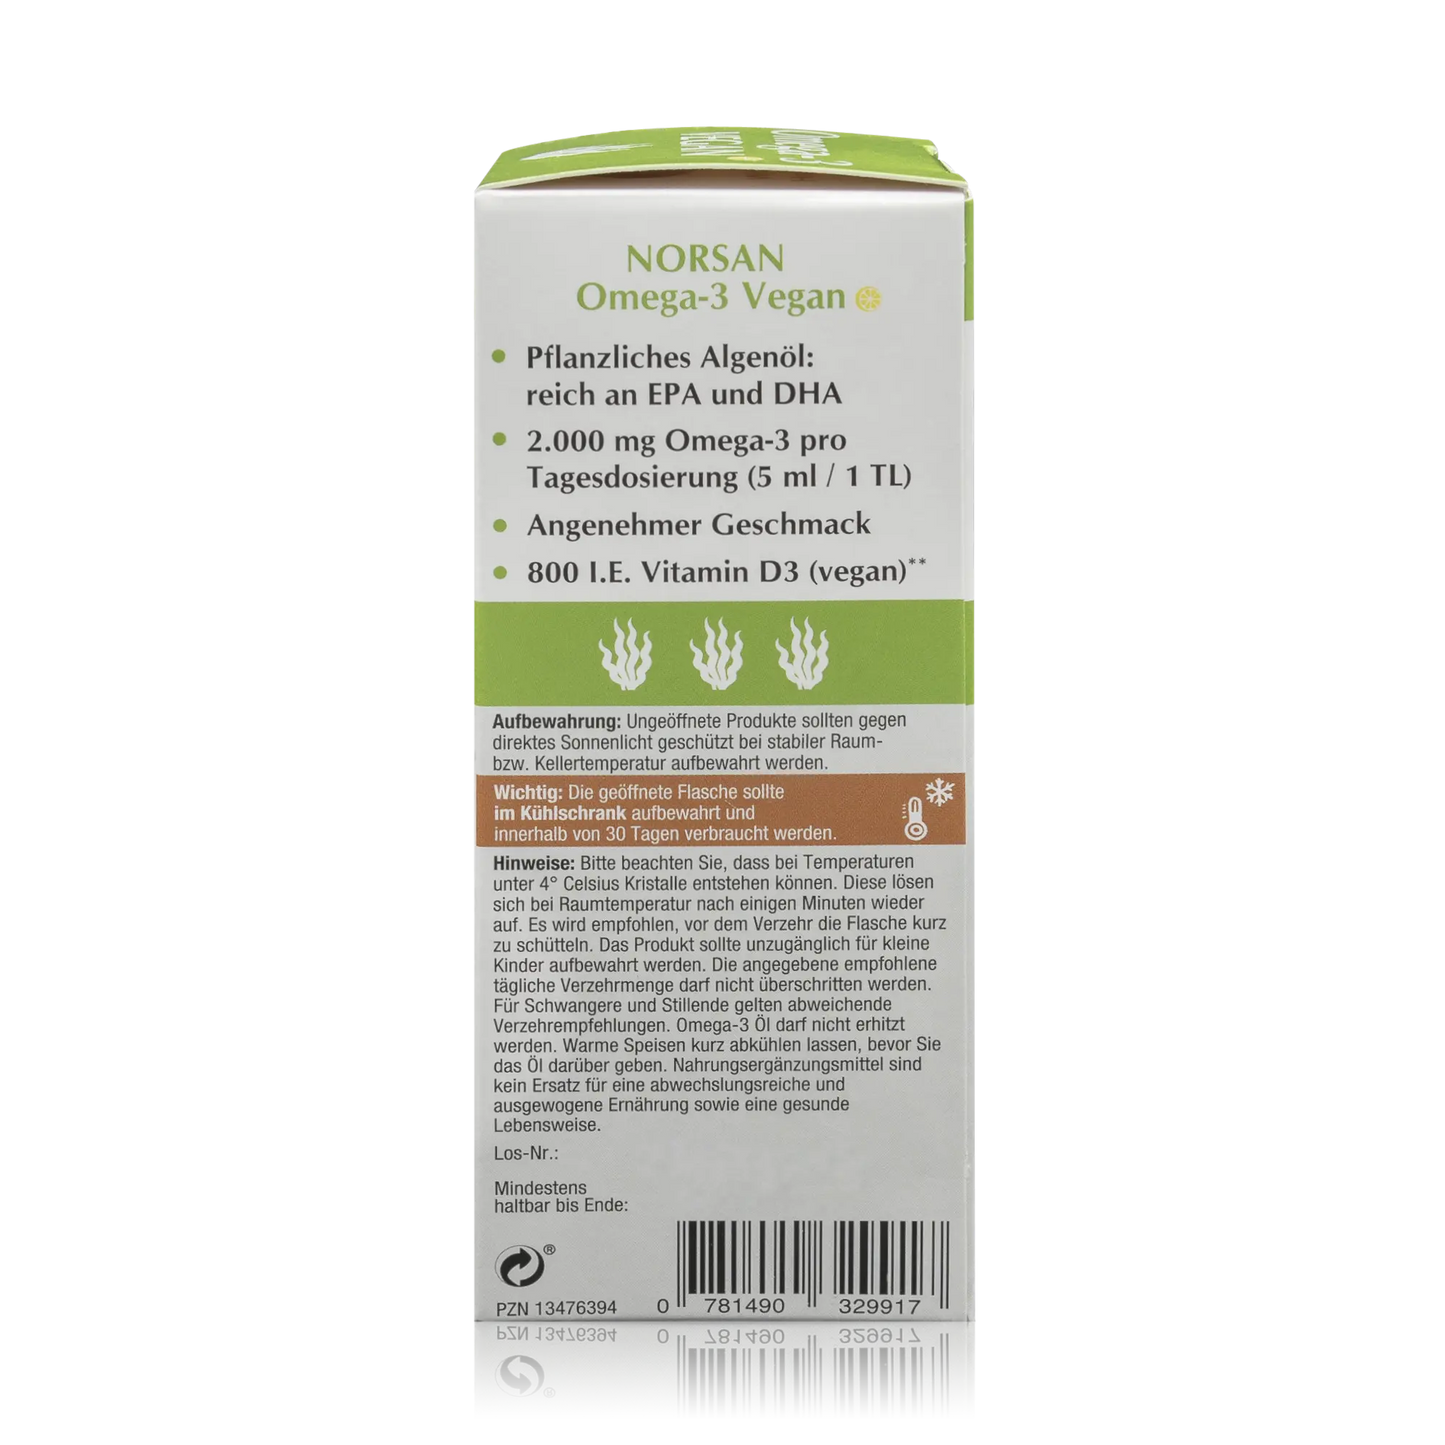 Norsan Algenöl Omega-3 Vegan mit Olivenöl und Zitronengeschmack (100ml) - ROTE.PLACE